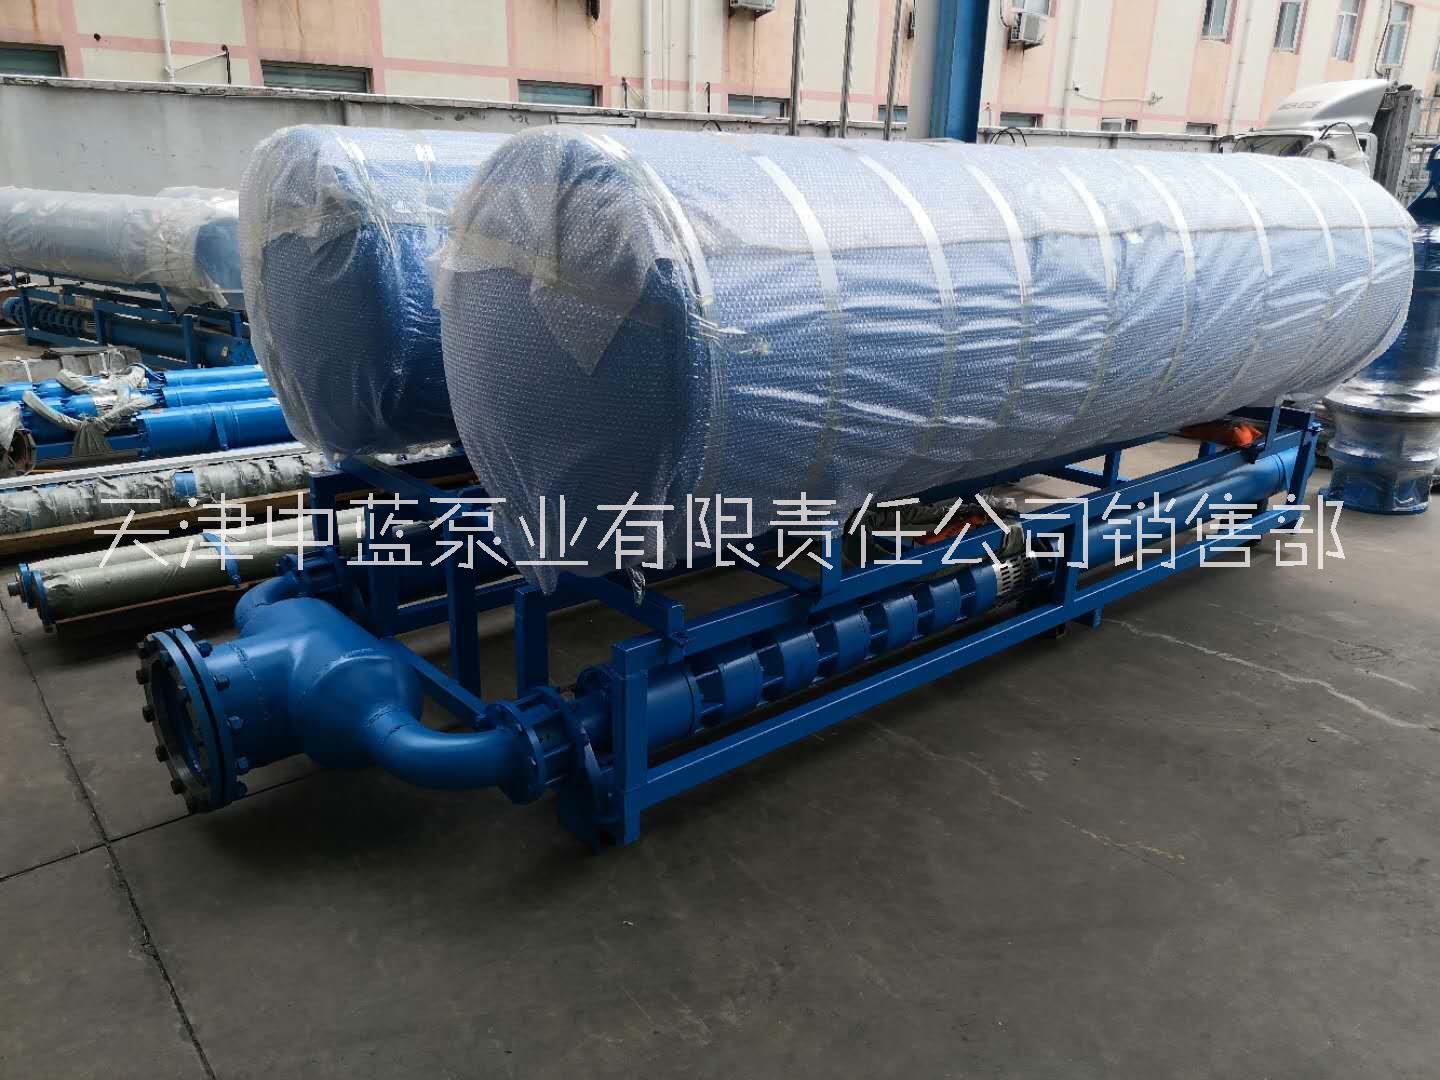 漂浮式排水泵 漂浮式排水泵-中蓝